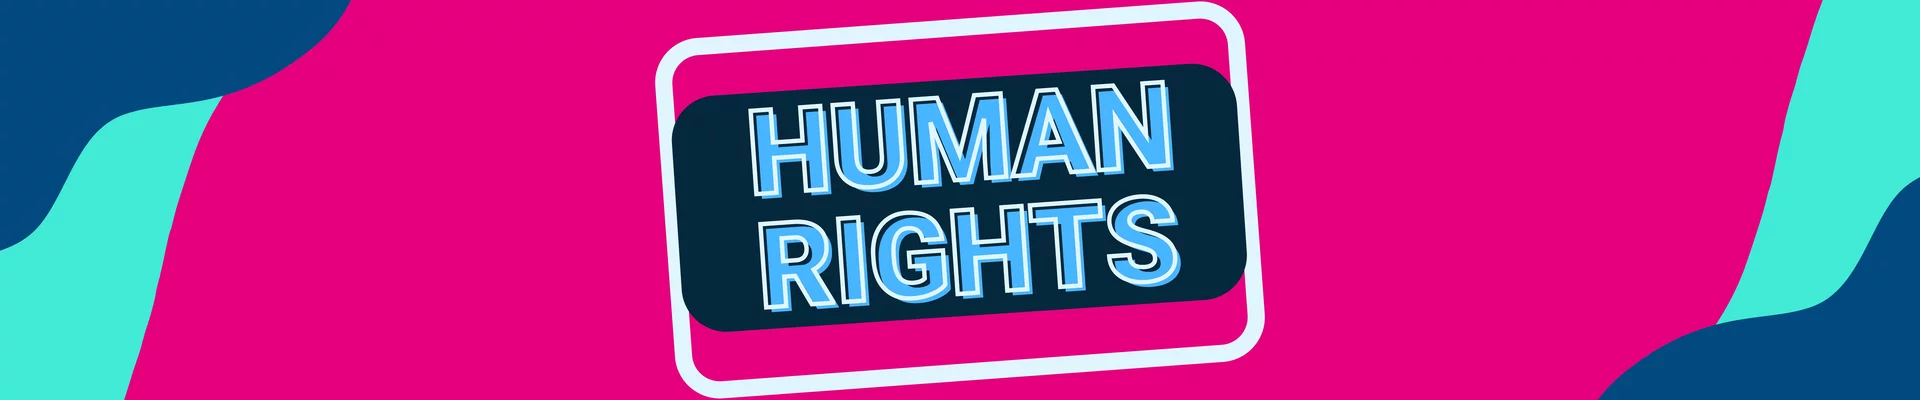 Human Rights Spotlight